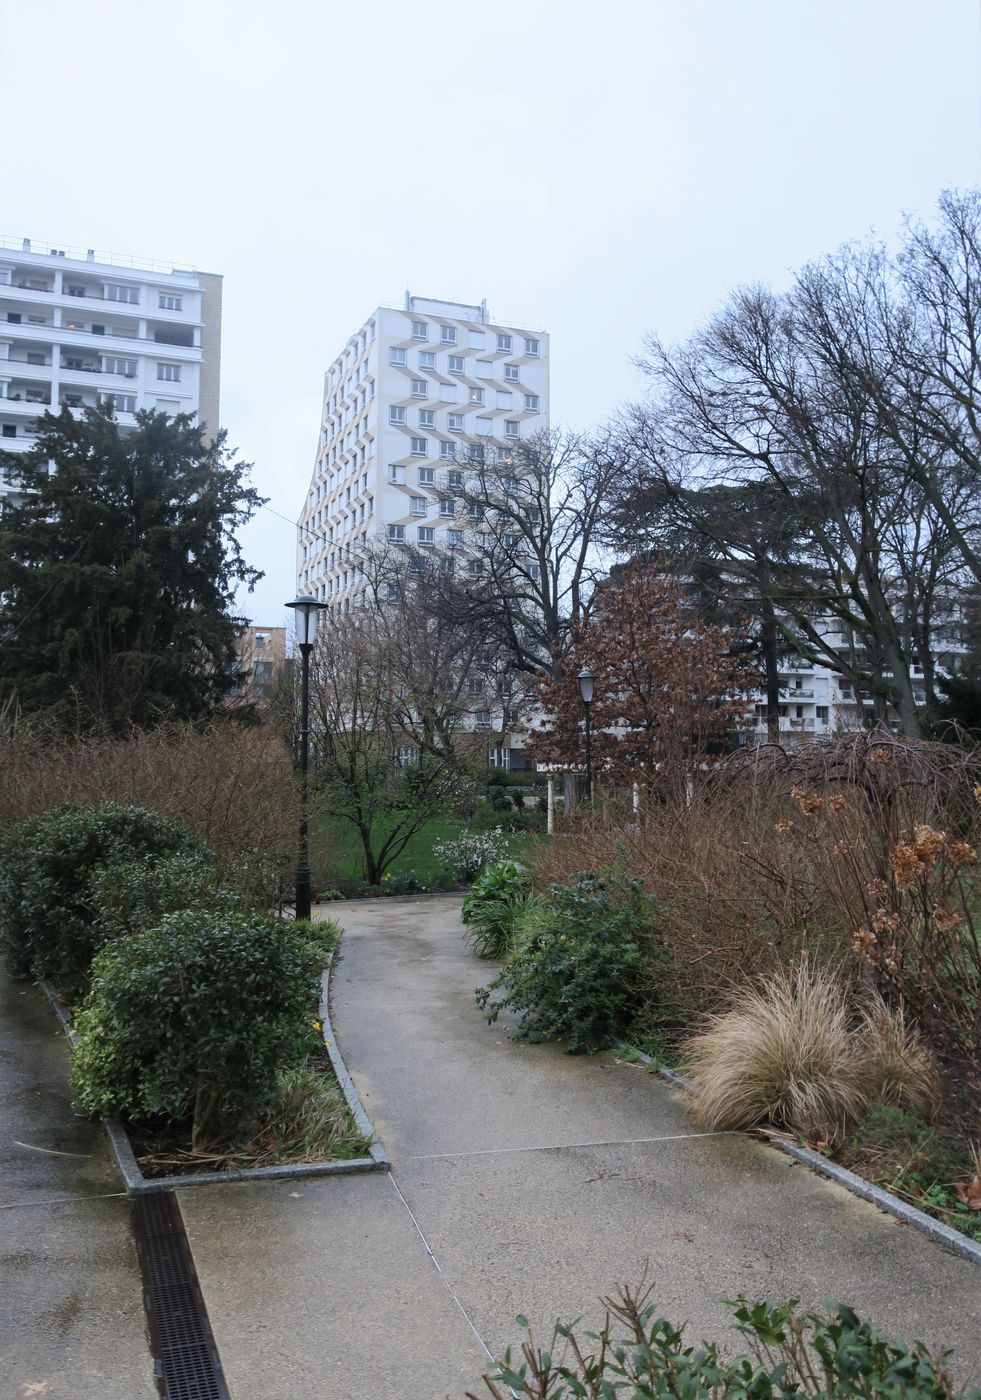 Парк "Планшет", изображение ландшафта.